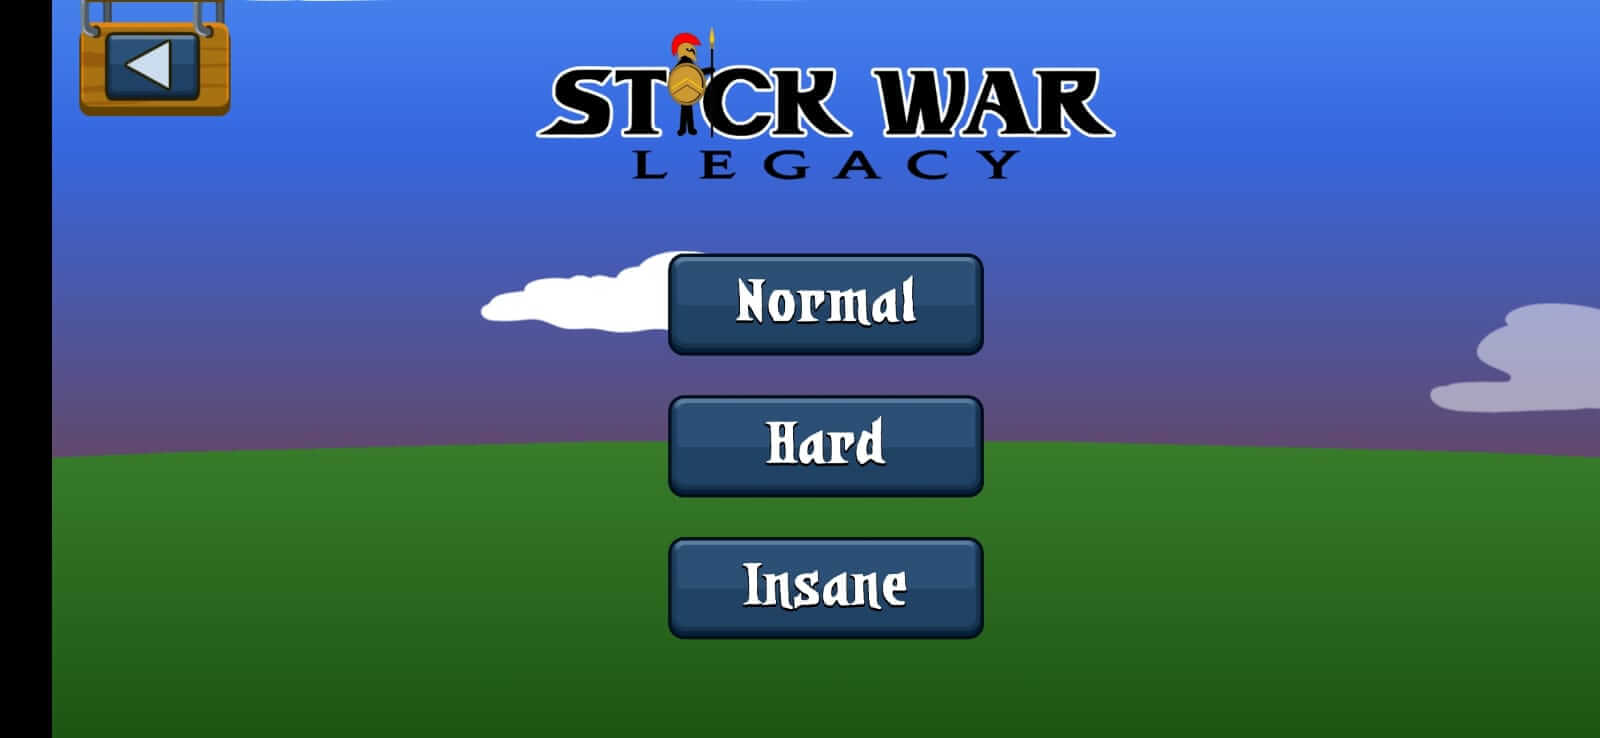 Stick War: Schermata dell'eredità